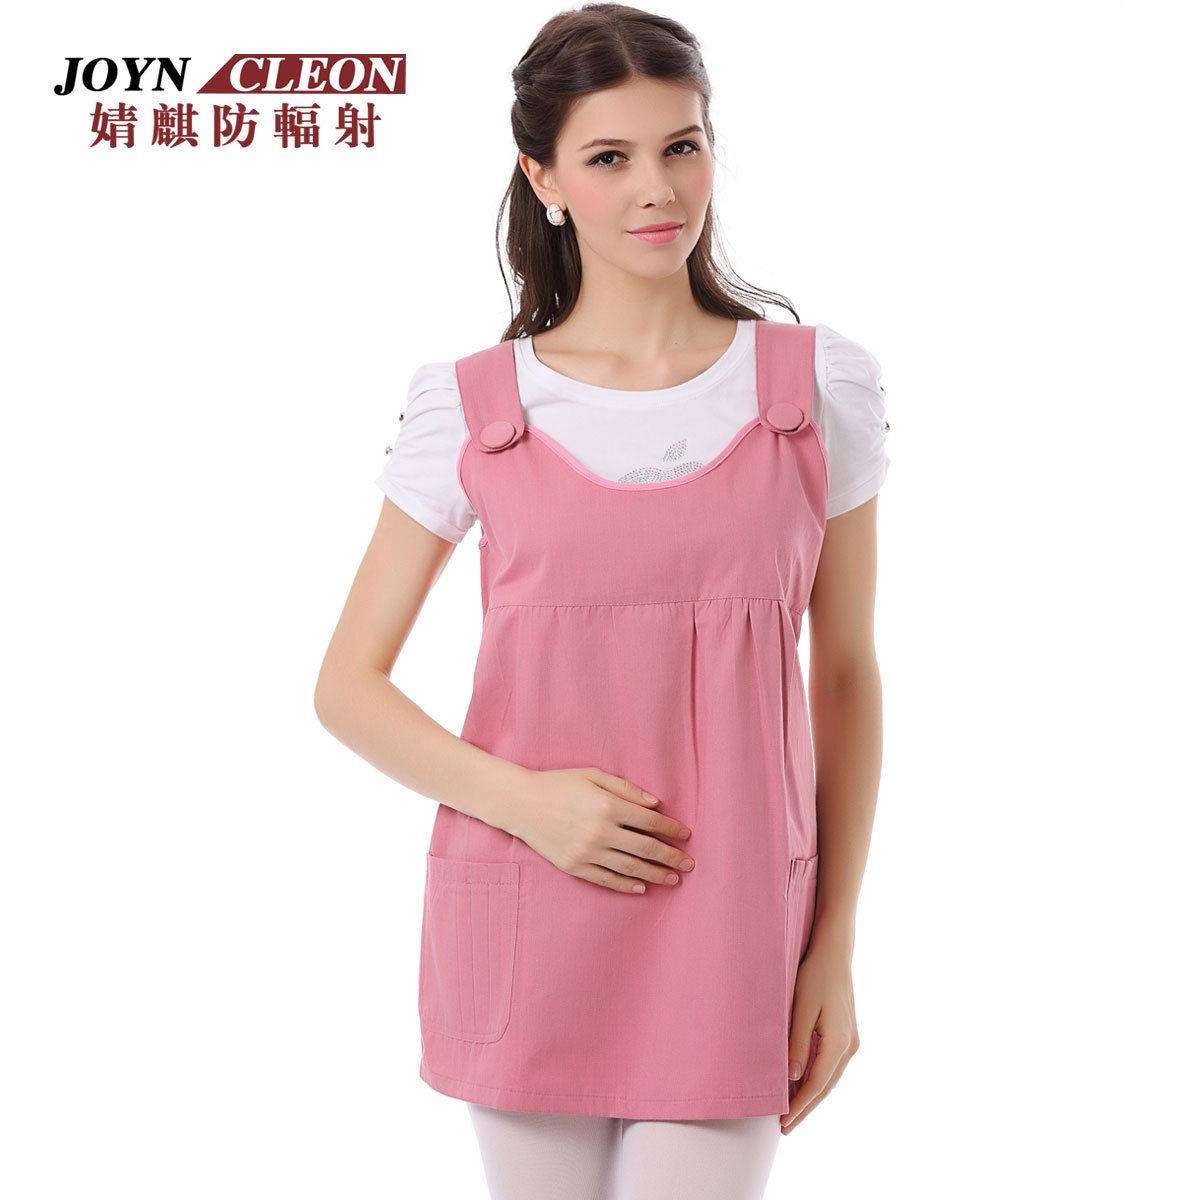 Maternity joyncleon radiation-resistant maternity clothing maternity clothing spring and summer clothing